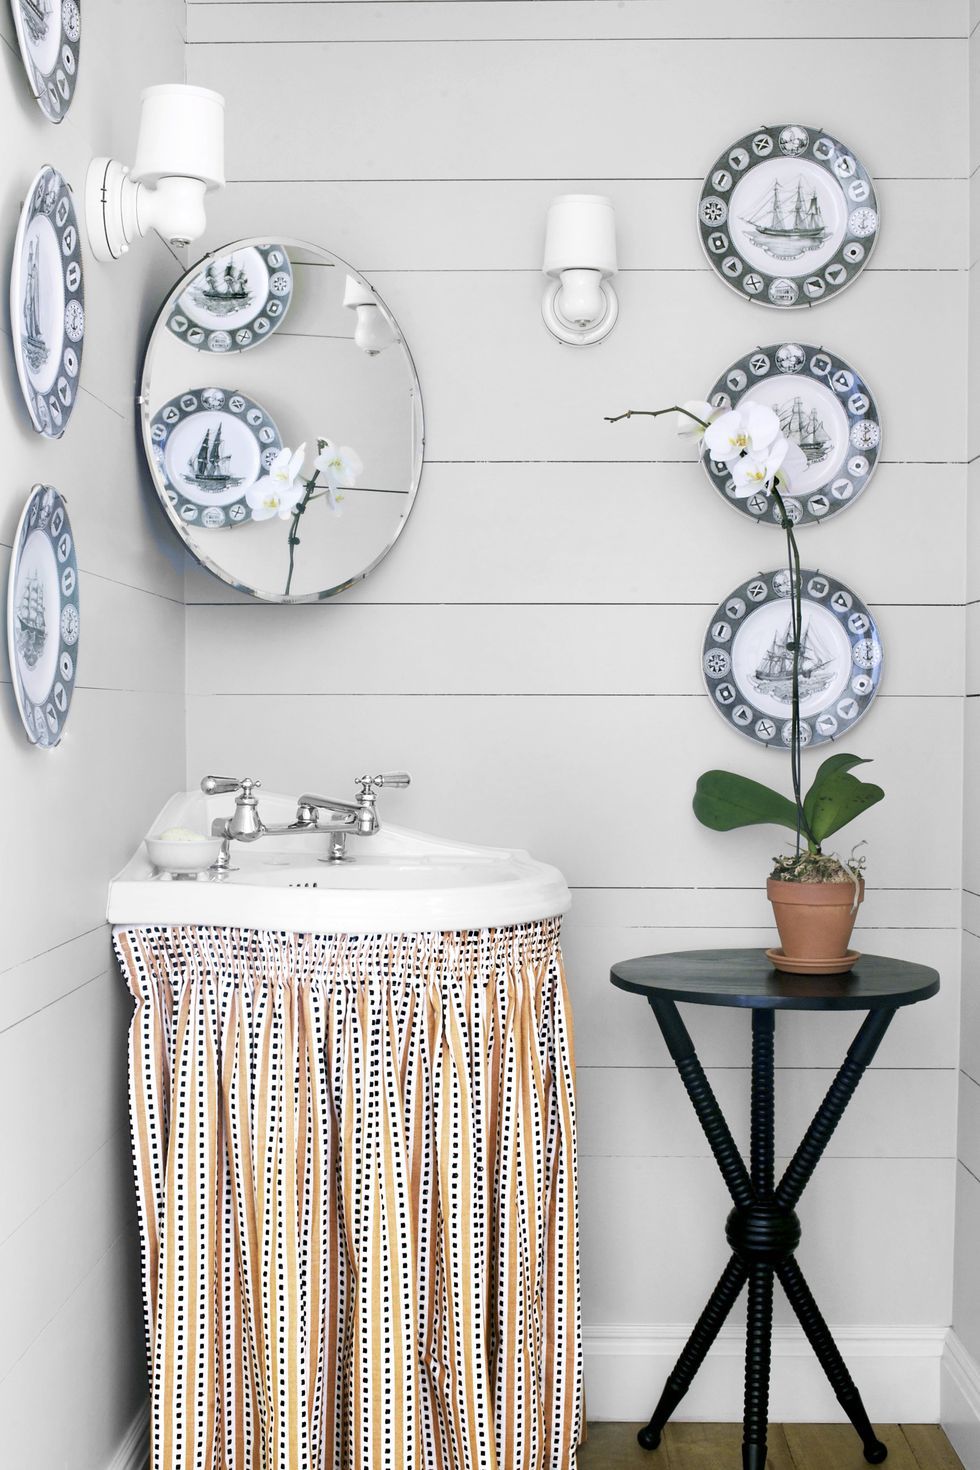 Hình ảnh phòng tắm nhỏ màu xám sáng với đĩa gốm sứ trang trí tường, dưới bồn rừa lắp thêm rèm vải giấu dọn vật dụng bên trong